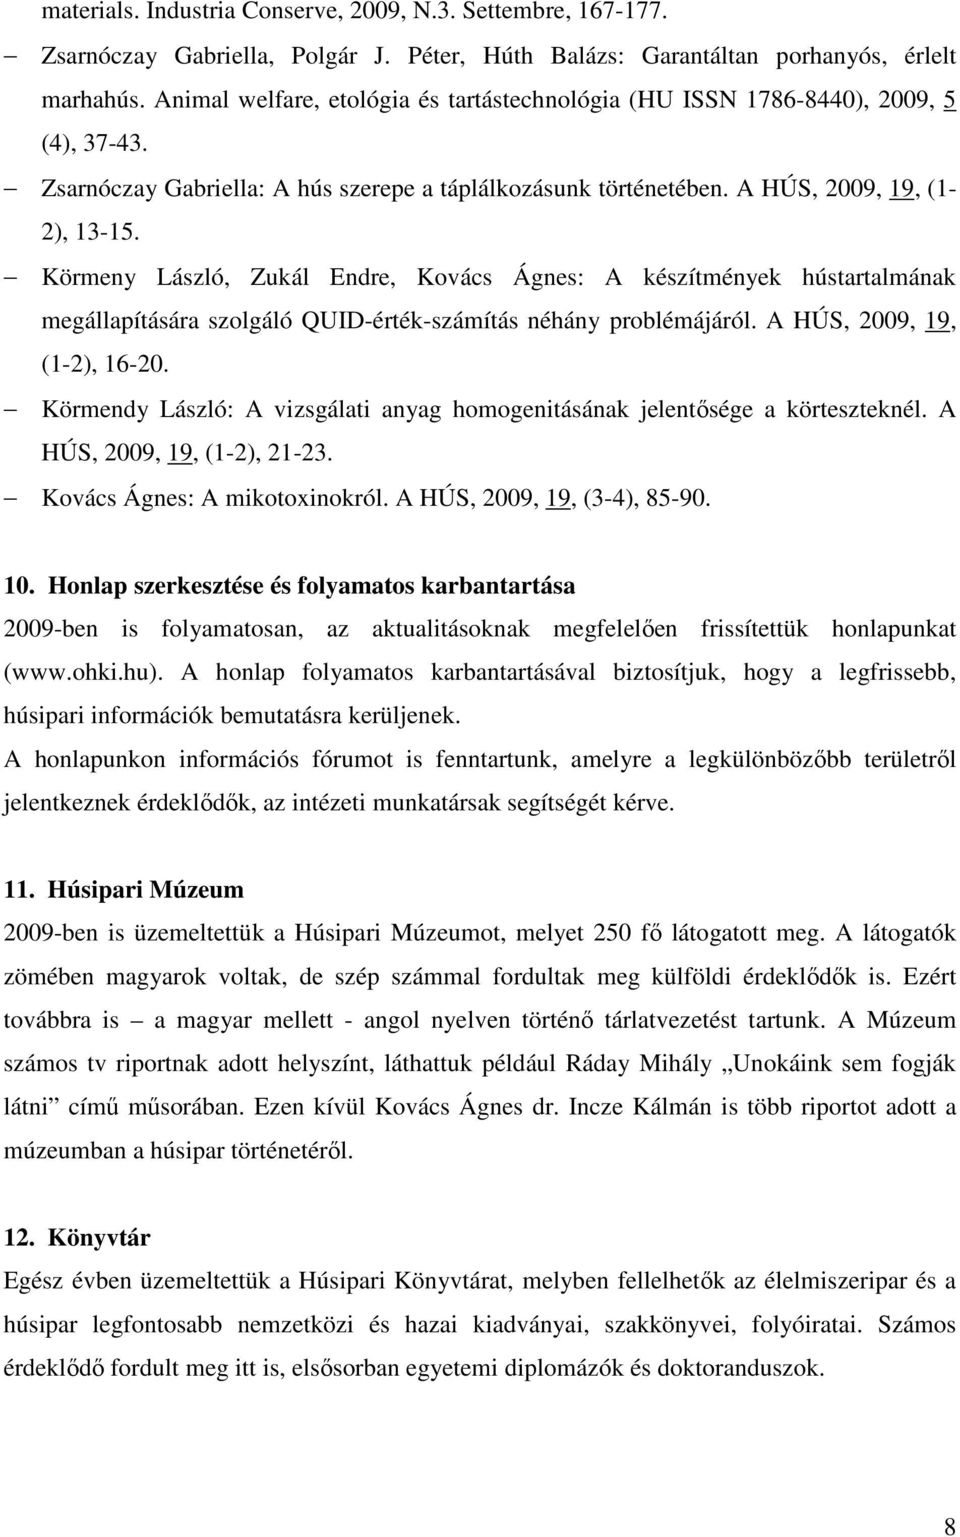 Körmeny László, Zukál Endre, Kovács Ágnes: A készítmények hústartalmának megállapítására szolgáló QUID-érték-számítás néhány problémájáról. A HÚS, 2009, 19, (1-2), 16-20.